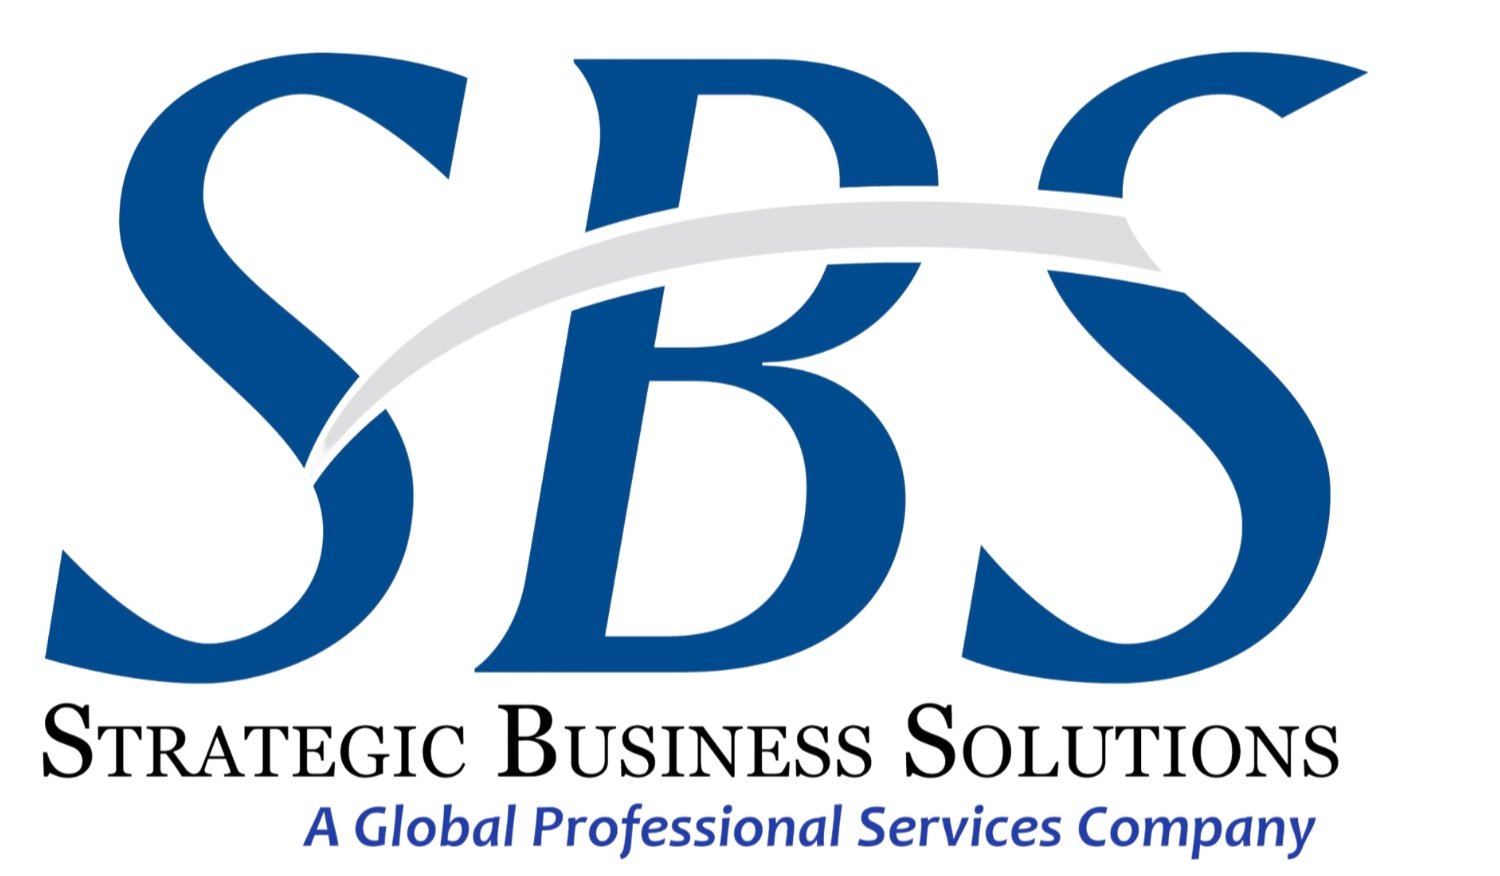 CSB-SBS